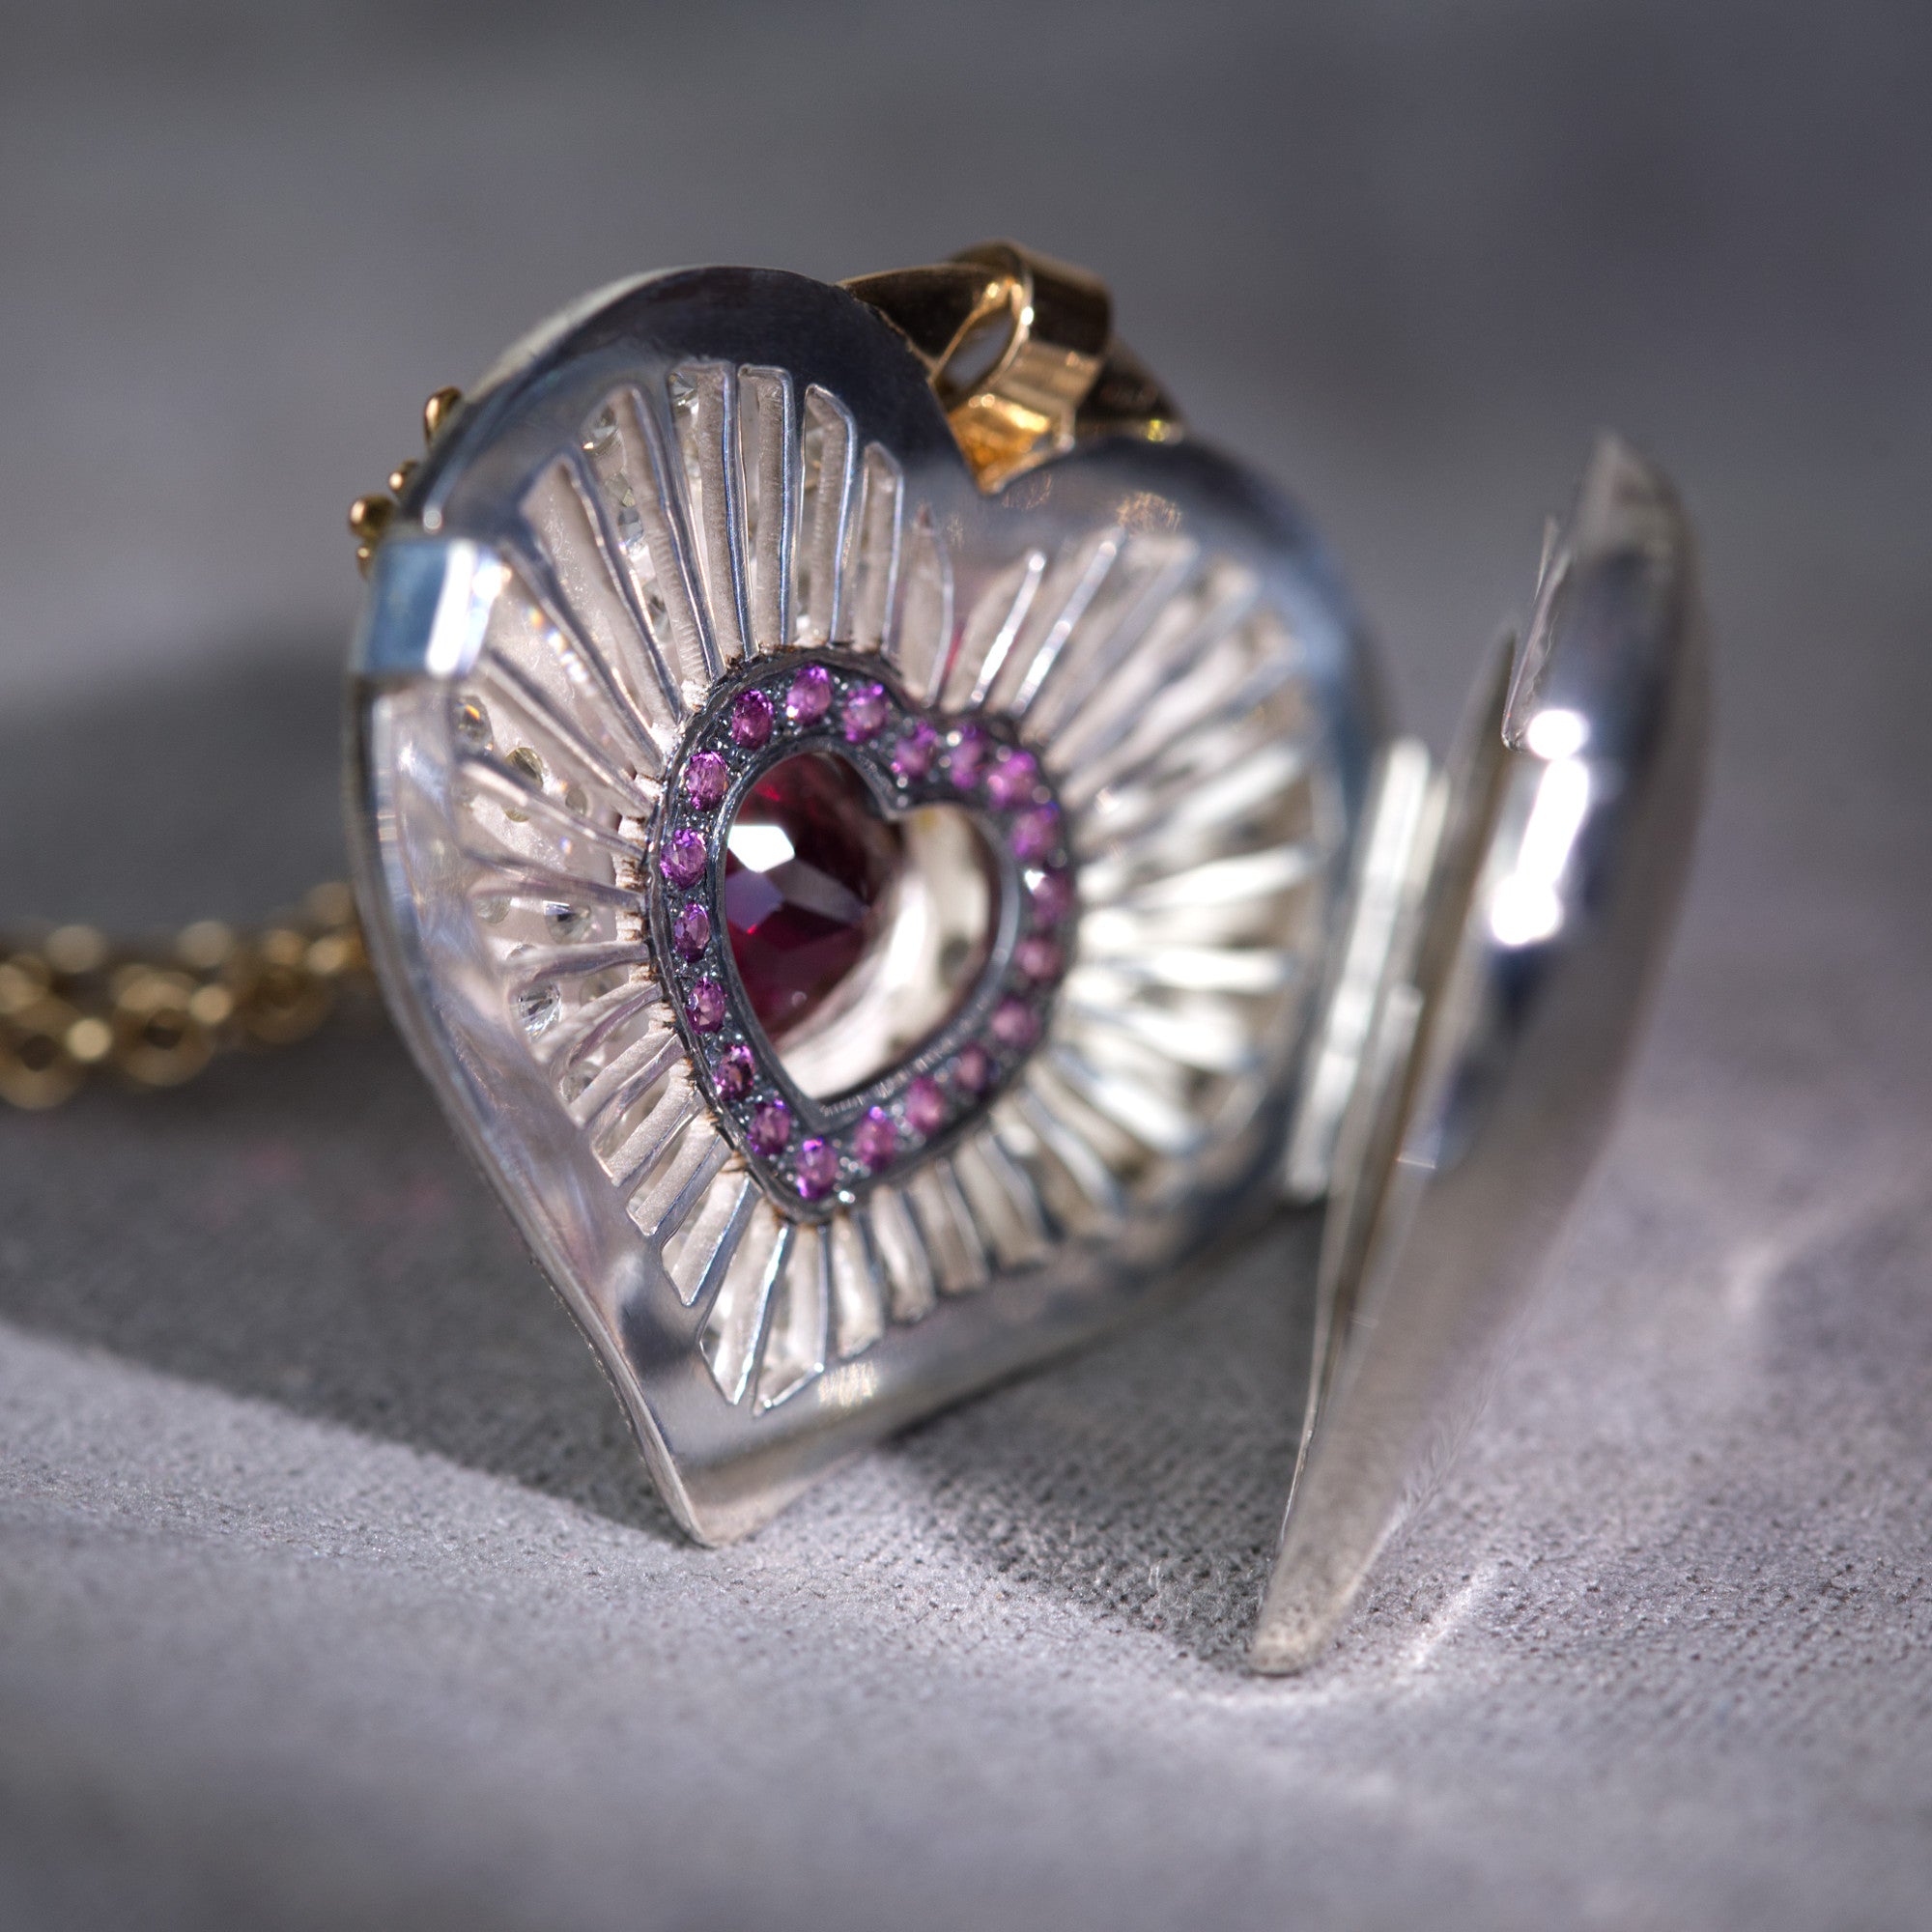 Rhodolite Garnet Heart Locket with white Zircon by Ewa Z. Sleziona Jewellery